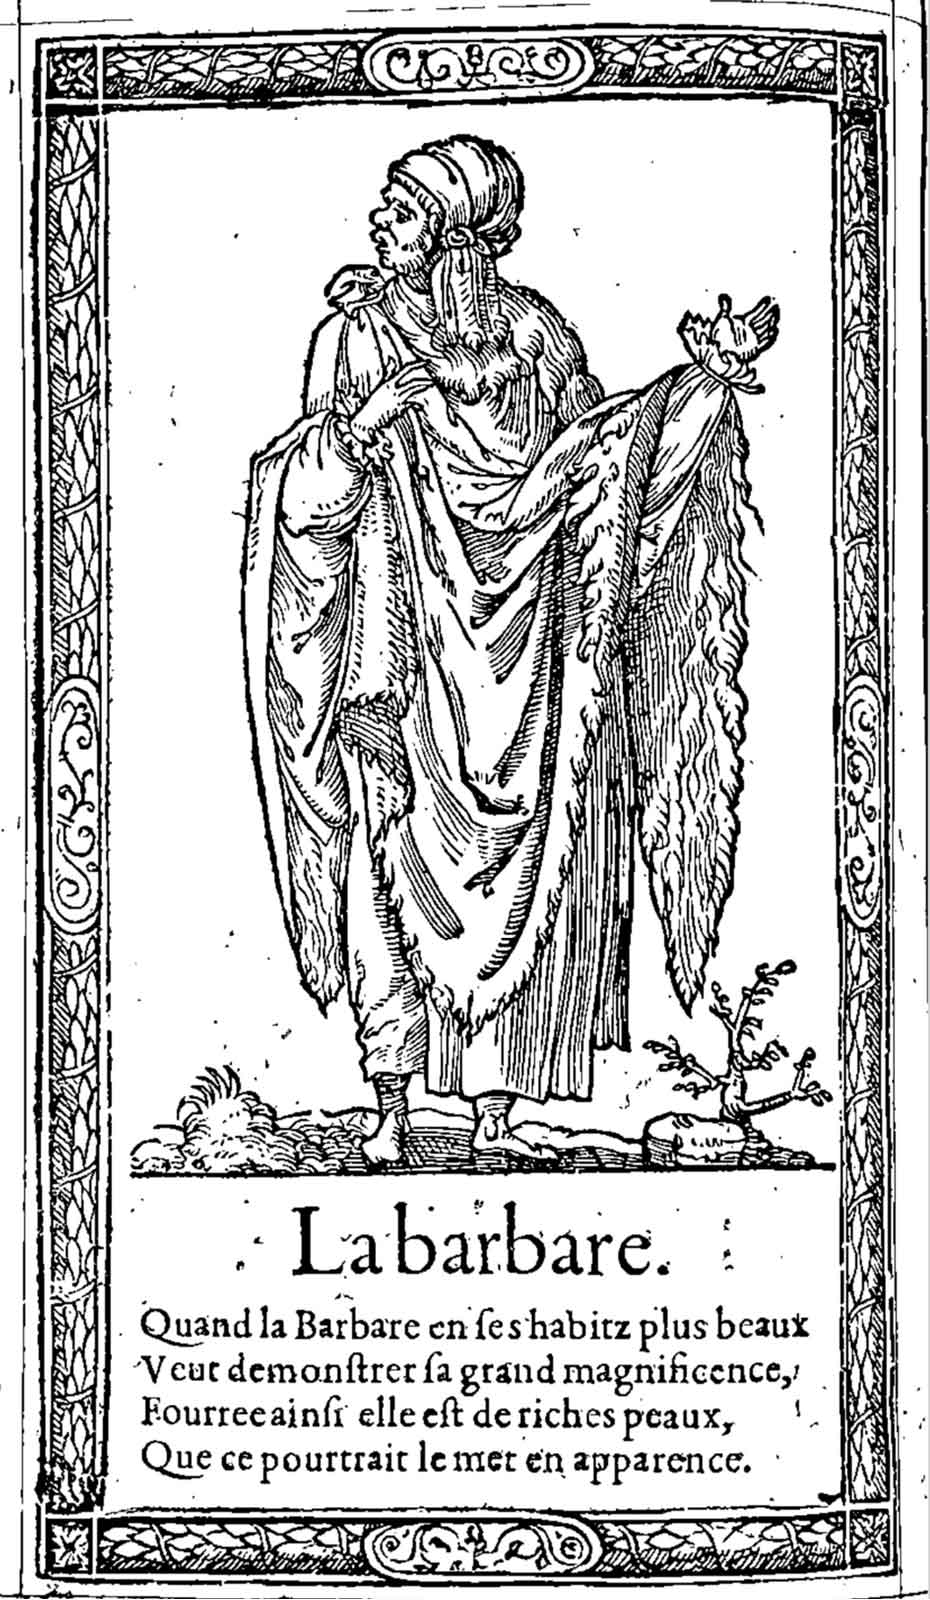 La barbare. Desprez, Recueil de la diversité des habits (1564)